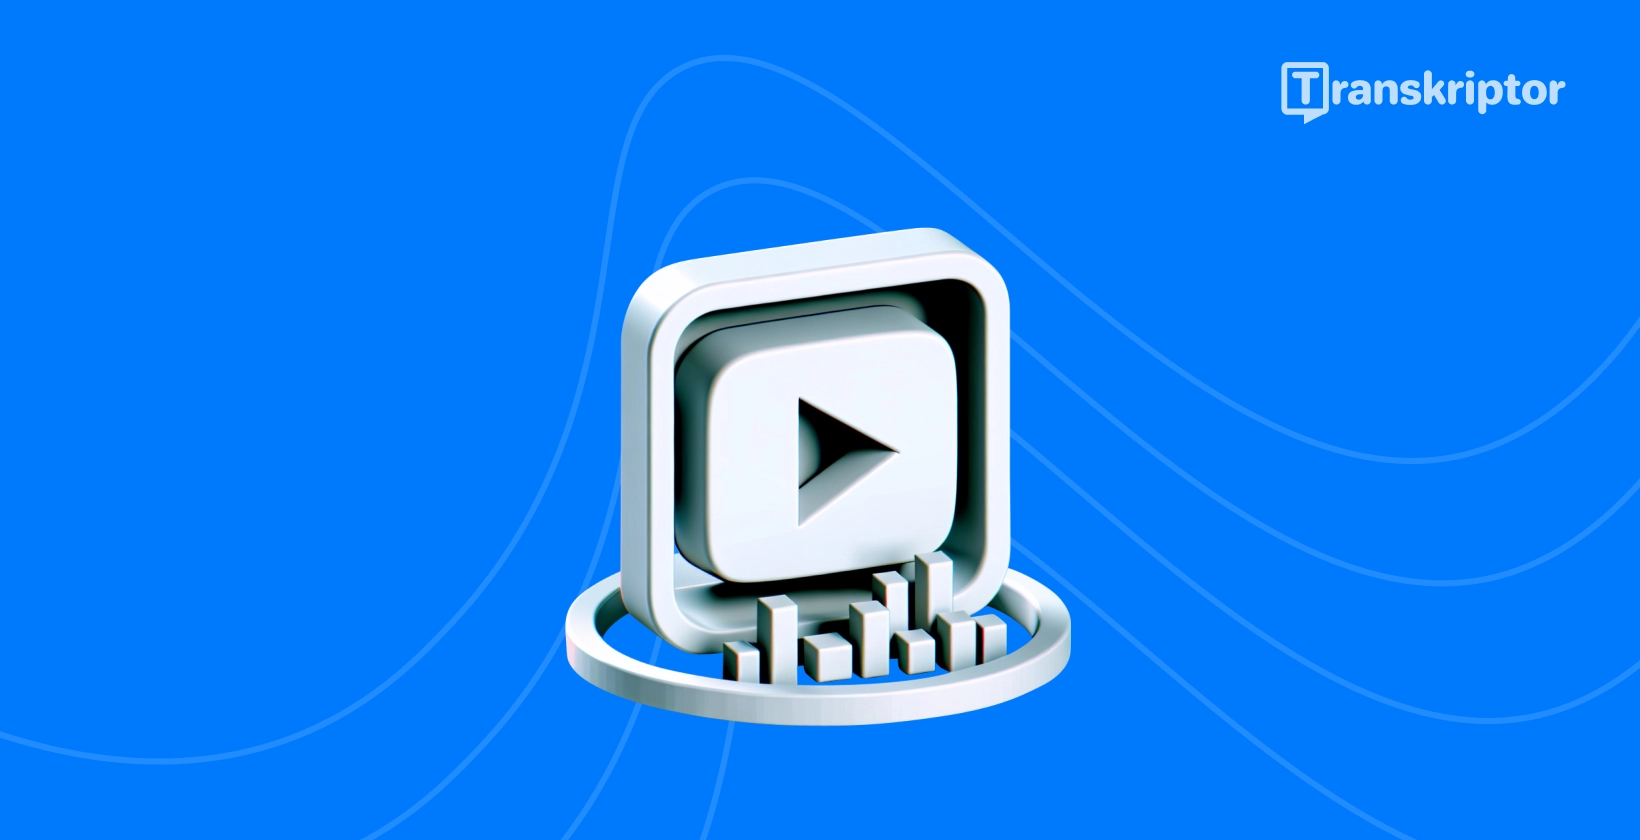 वीडियो को प्रभावी ढंग से ट्रांसक्रिप्ट YouTube करने के लिए प्ले बटन और ट्रांसक्रिप्शन विजुअल इलस्ट्रेटिंग तरीके।